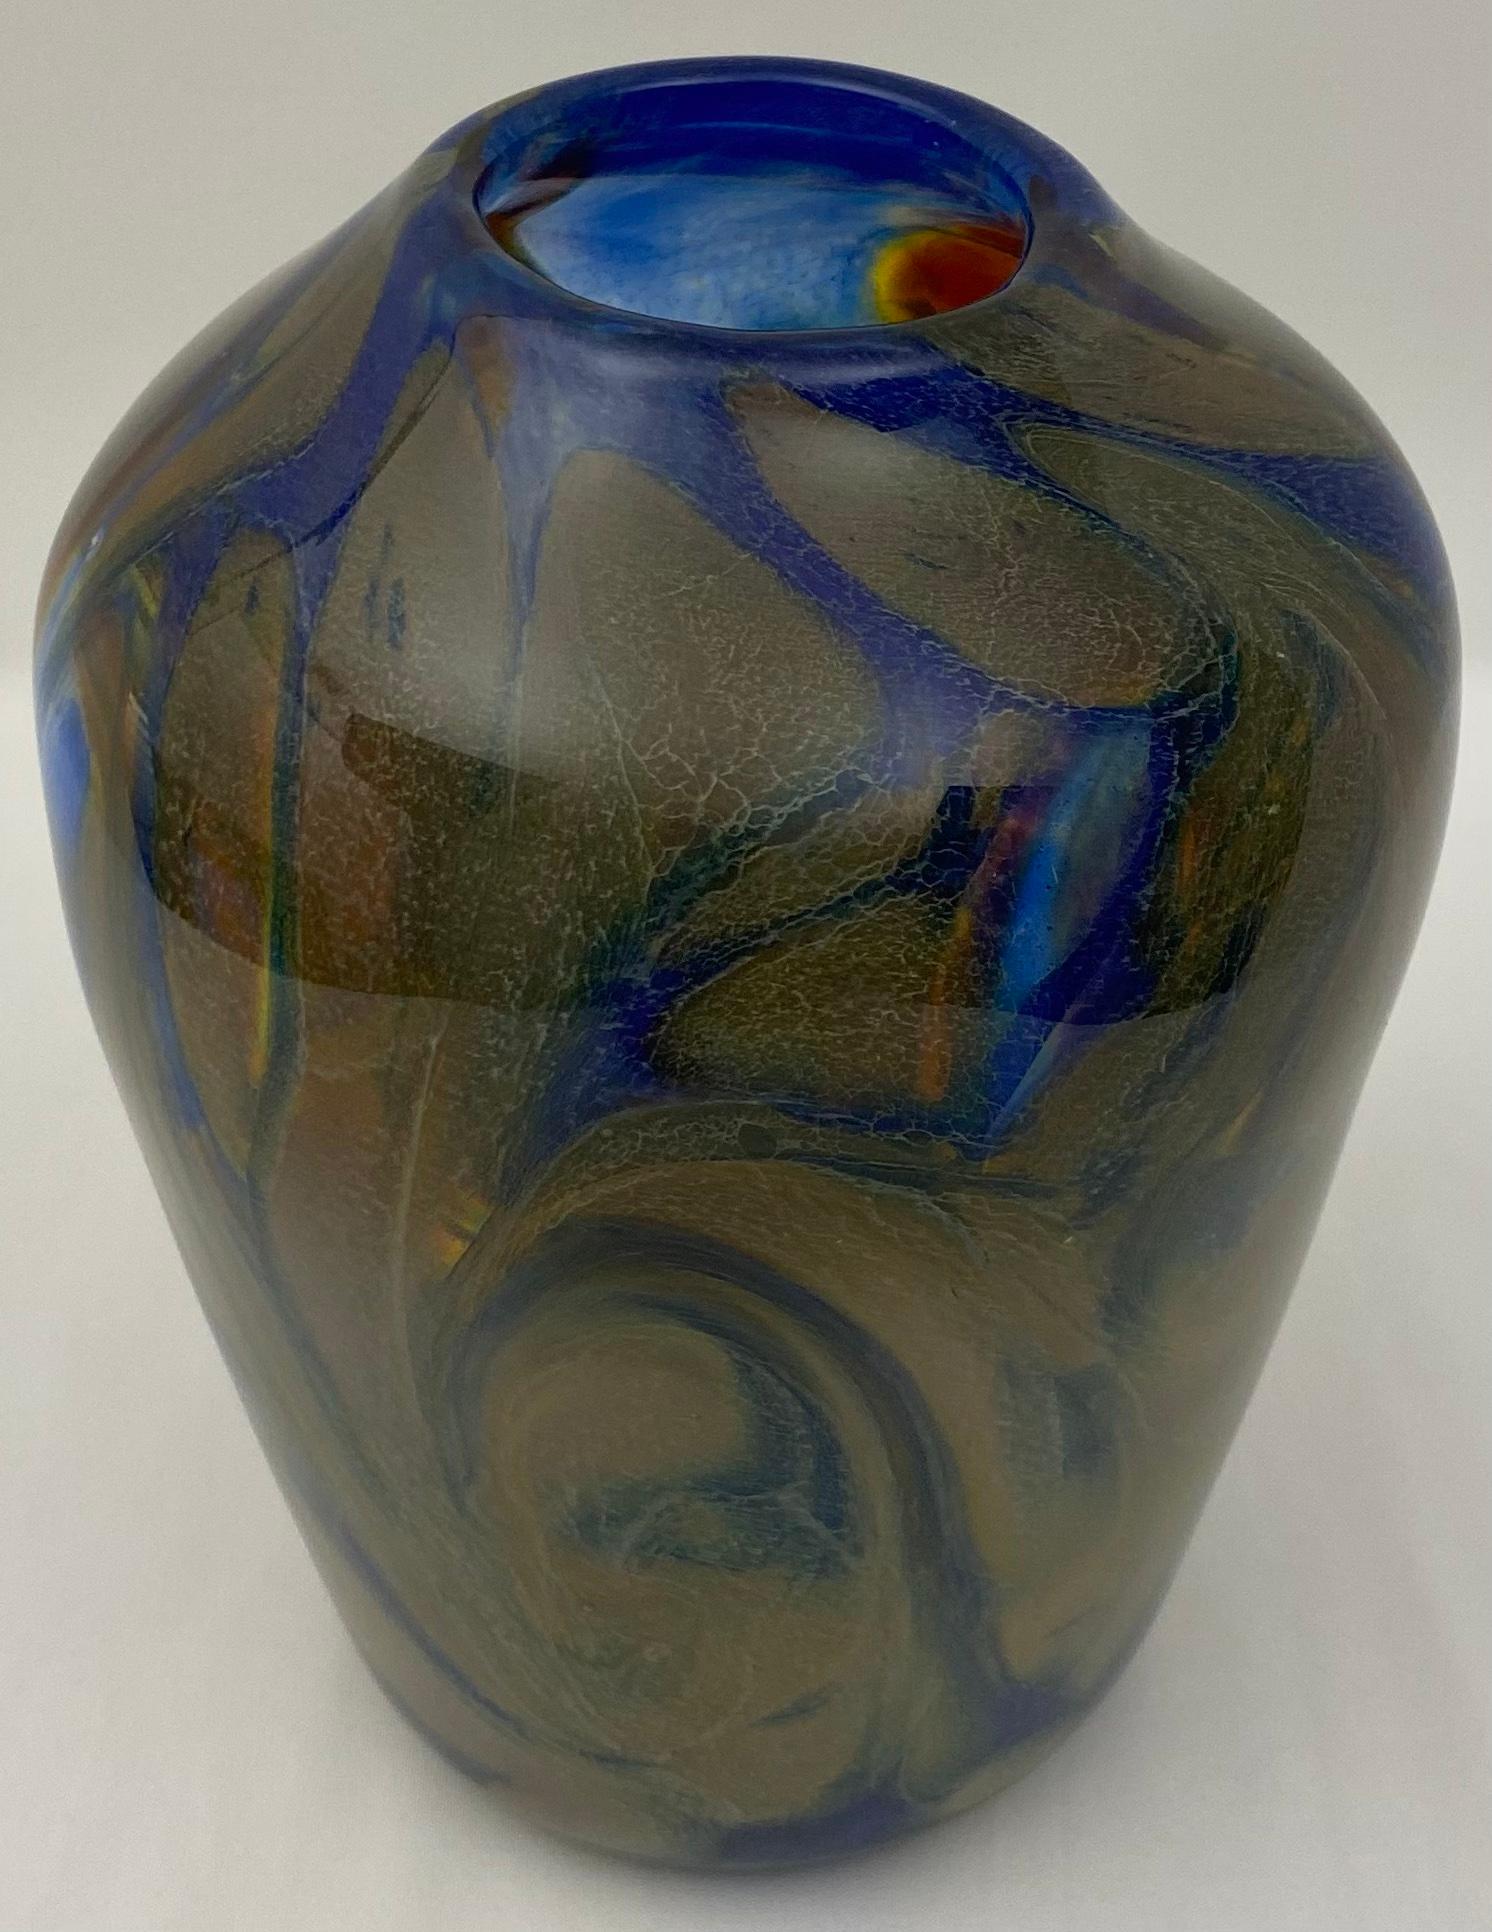 Vase en verre d'art Murano Fratelli Toso, au design élégant, parfait pour exposer vos fleurs préférées. 

Des couleurs et un design étonnants.
Très bon état vintage, sans fissures ni éclats. 
Mesures : 7 1/4